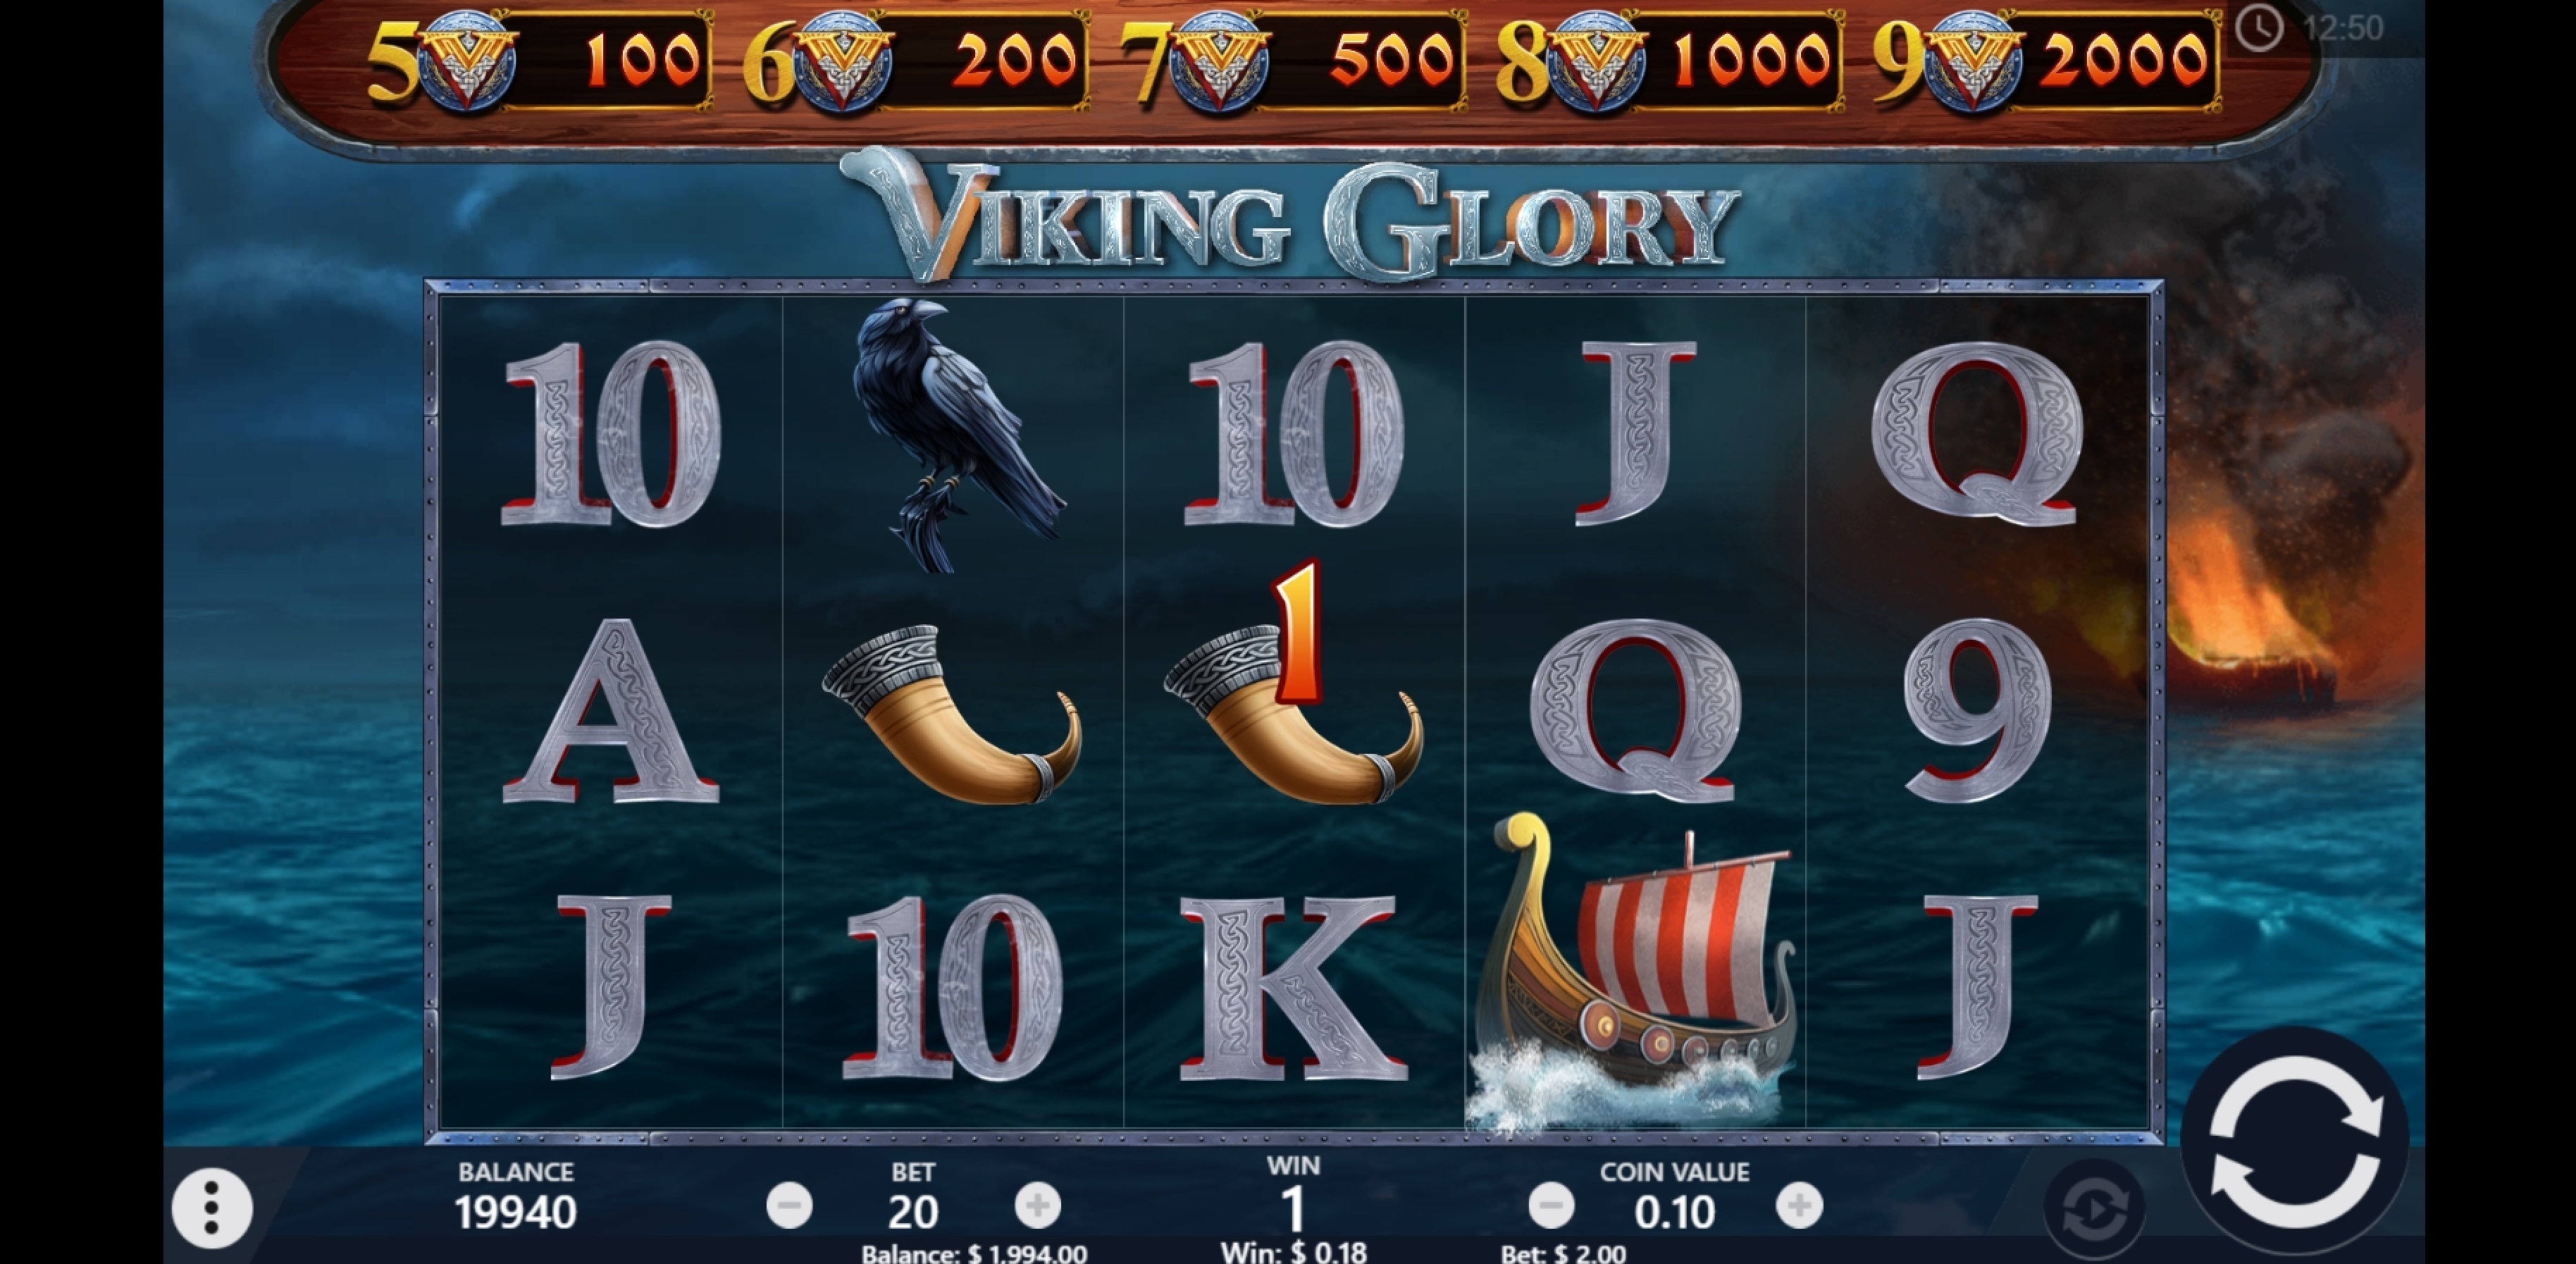 Win Money in Viking Glory Free Slot Game by PariPlay